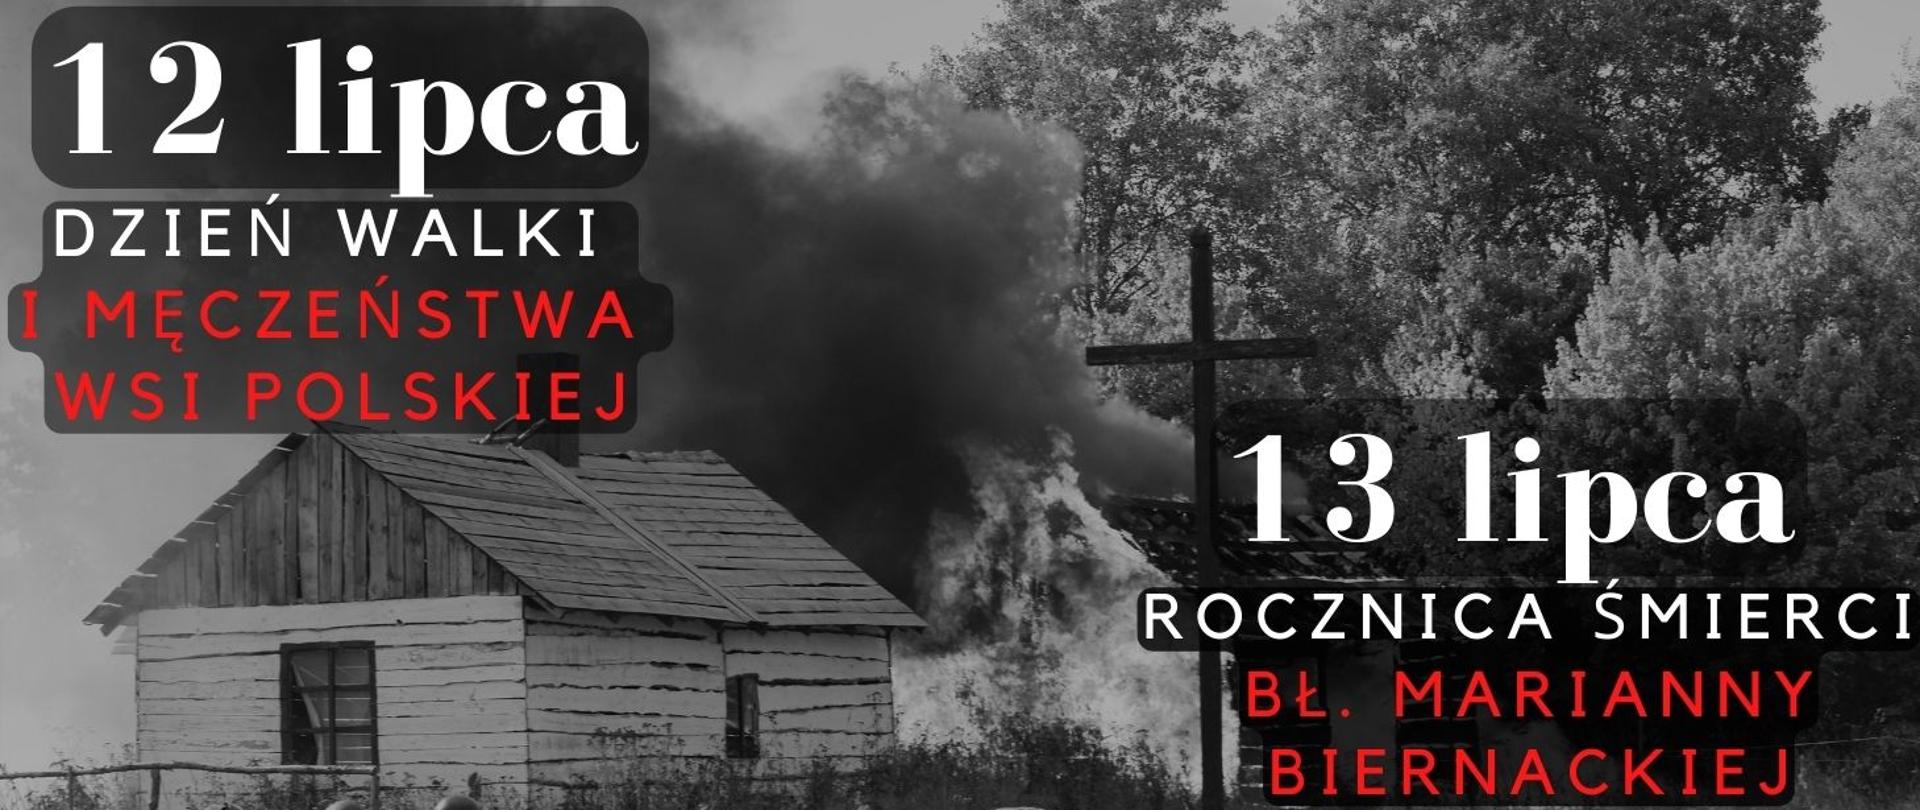 12 lipca Dzień Walki i Męczeństwa Wsi Polskiej